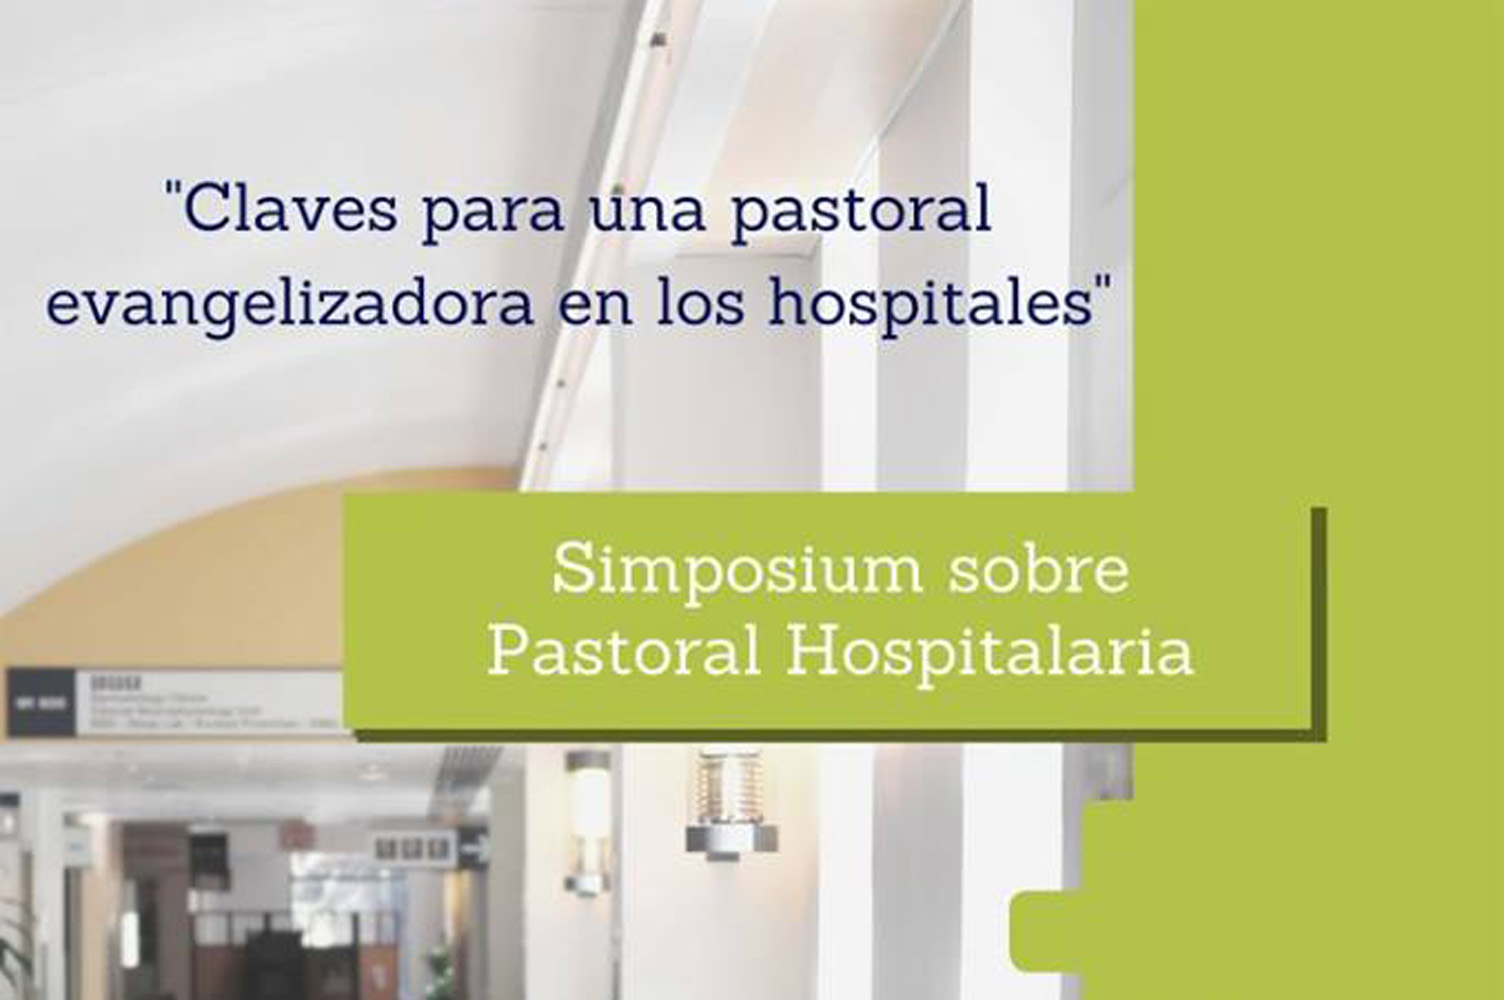 Simposium sobre Pastoral Hospitalaria, en El Escorial, del 13 al 15 de octubre